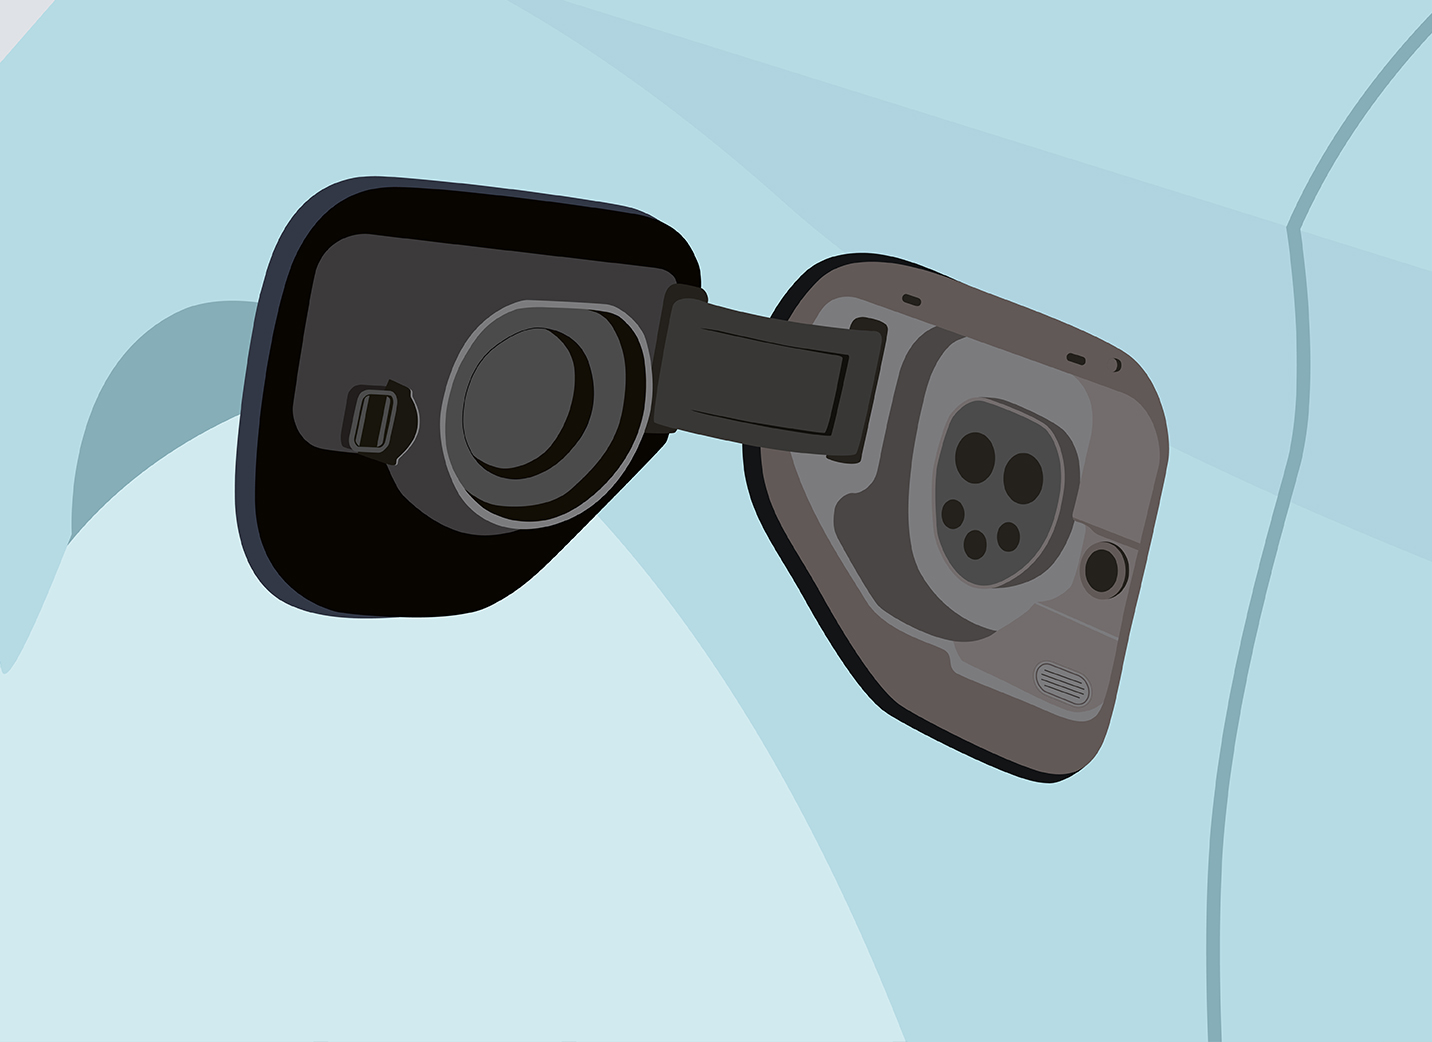 Comment recharger votre voiture électrique Seat à la maison avec un chargeur wallbox étape 1 : ouvrir la trappe de charge sur la voiture 